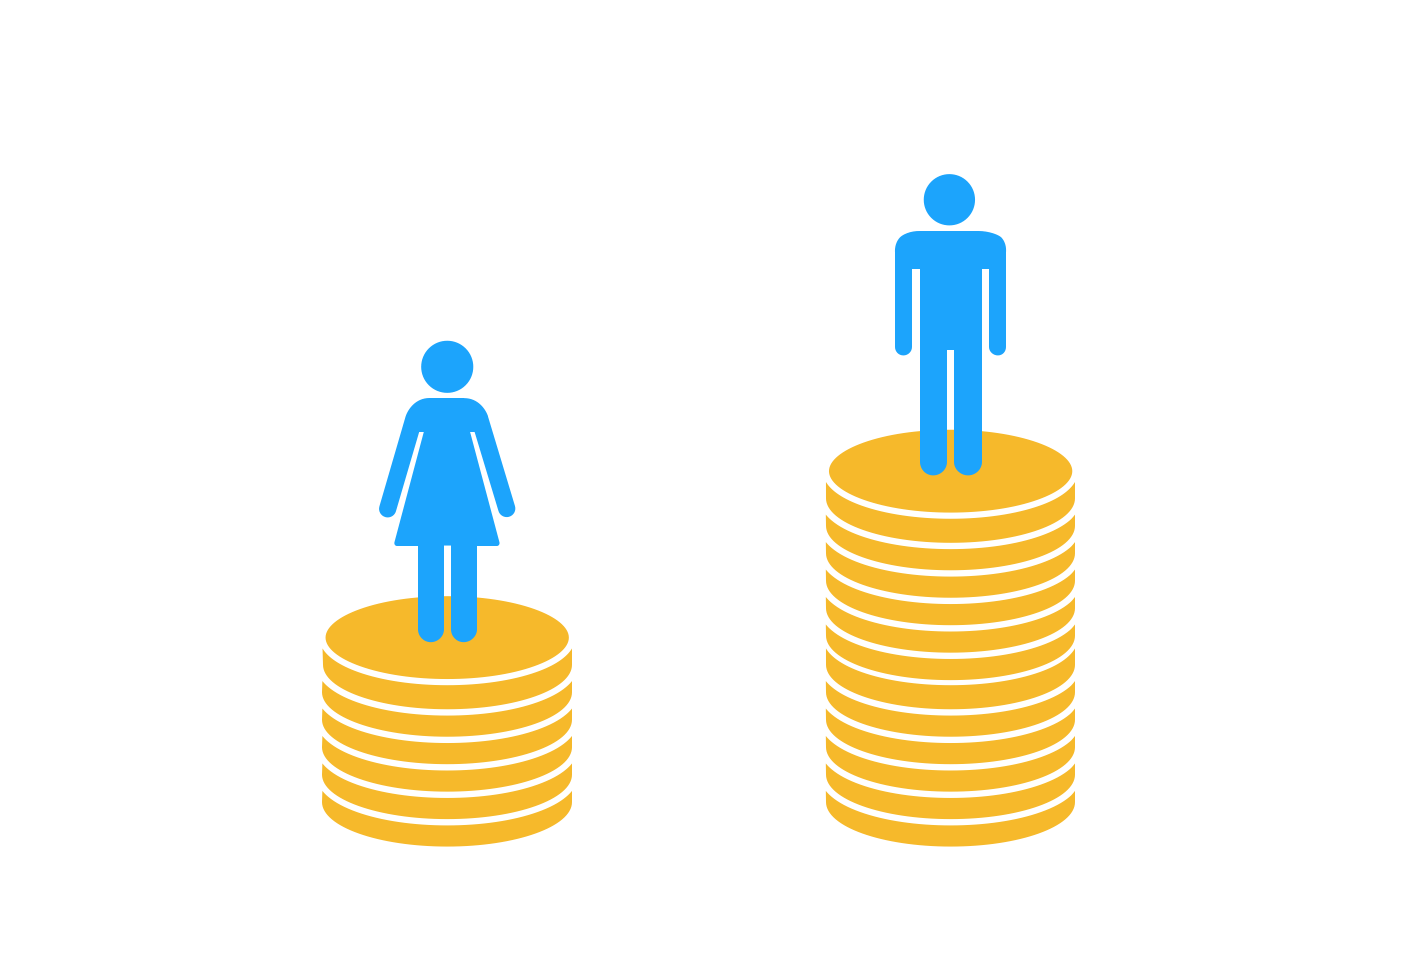 Las mujeres son las grandes perdedoras en la distribución de la riqueza mundial